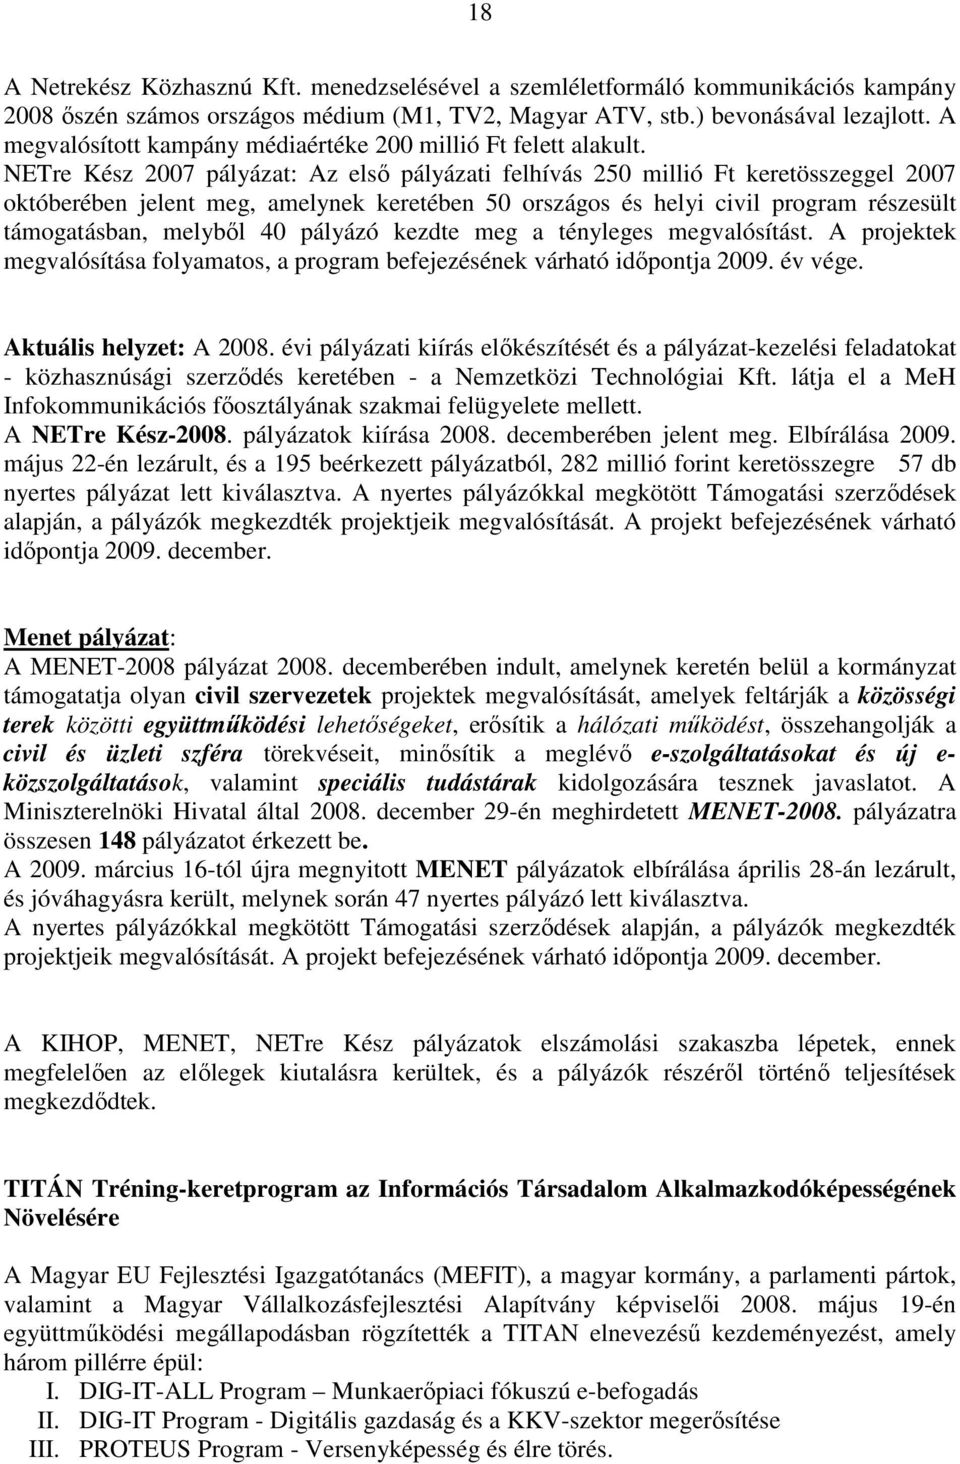 NETre Kész 2007 pályázat: Az elsı pályázati felhívás 250 millió Ft keretösszeggel 2007 októberében jelent meg, amelynek keretében 50 országos és helyi civil program részesült támogatásban, melybıl 40